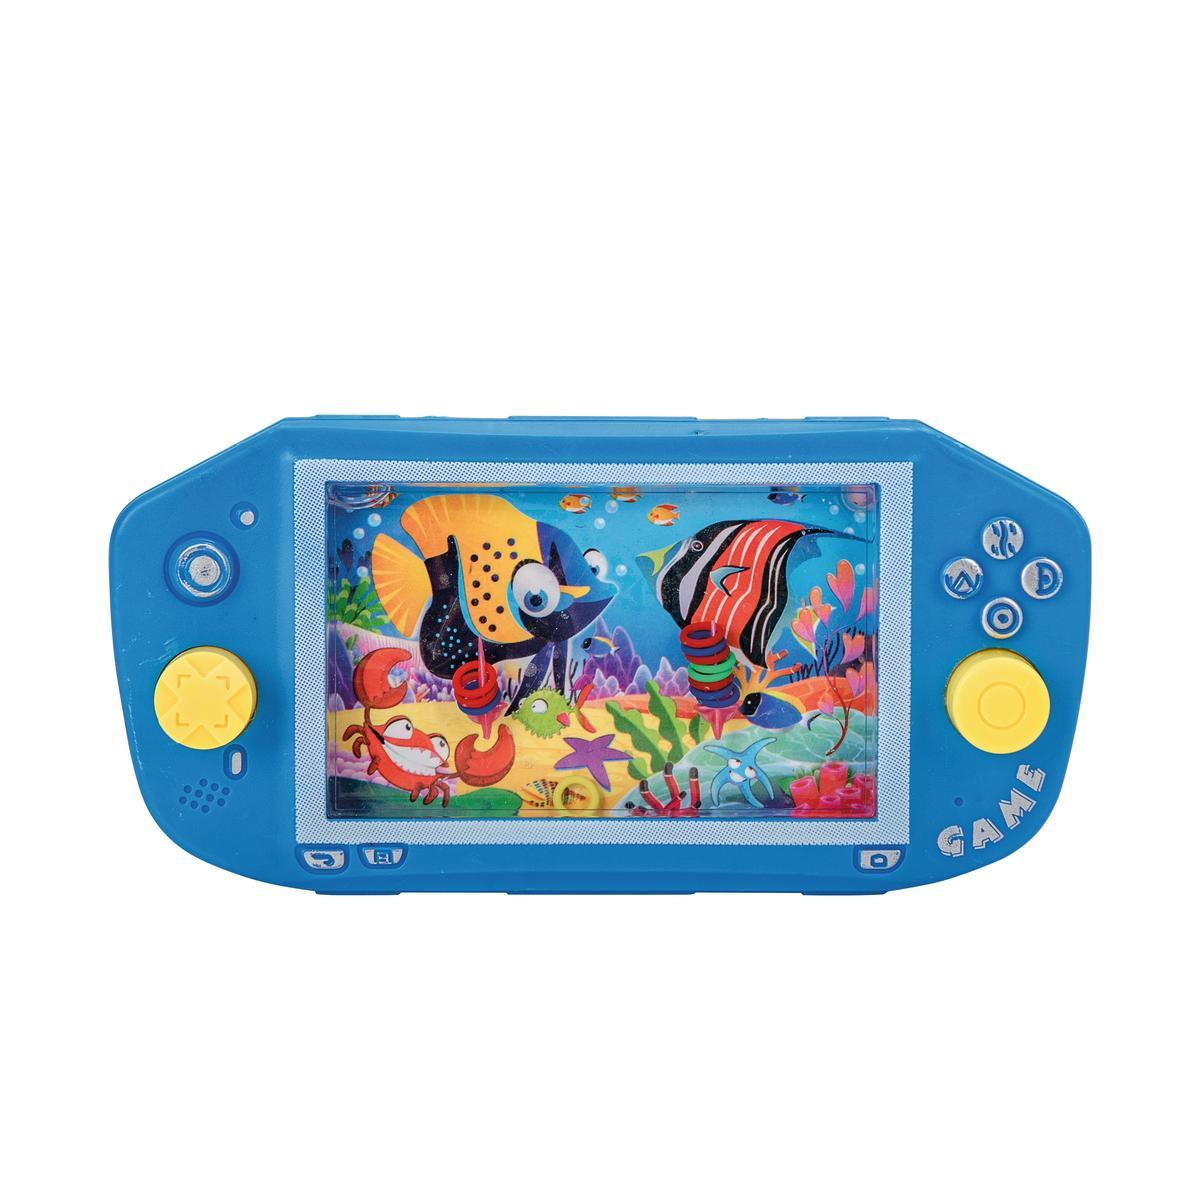 Console de jeux à eau - 17.5 x 9 x 2.5 cm - Multicolore